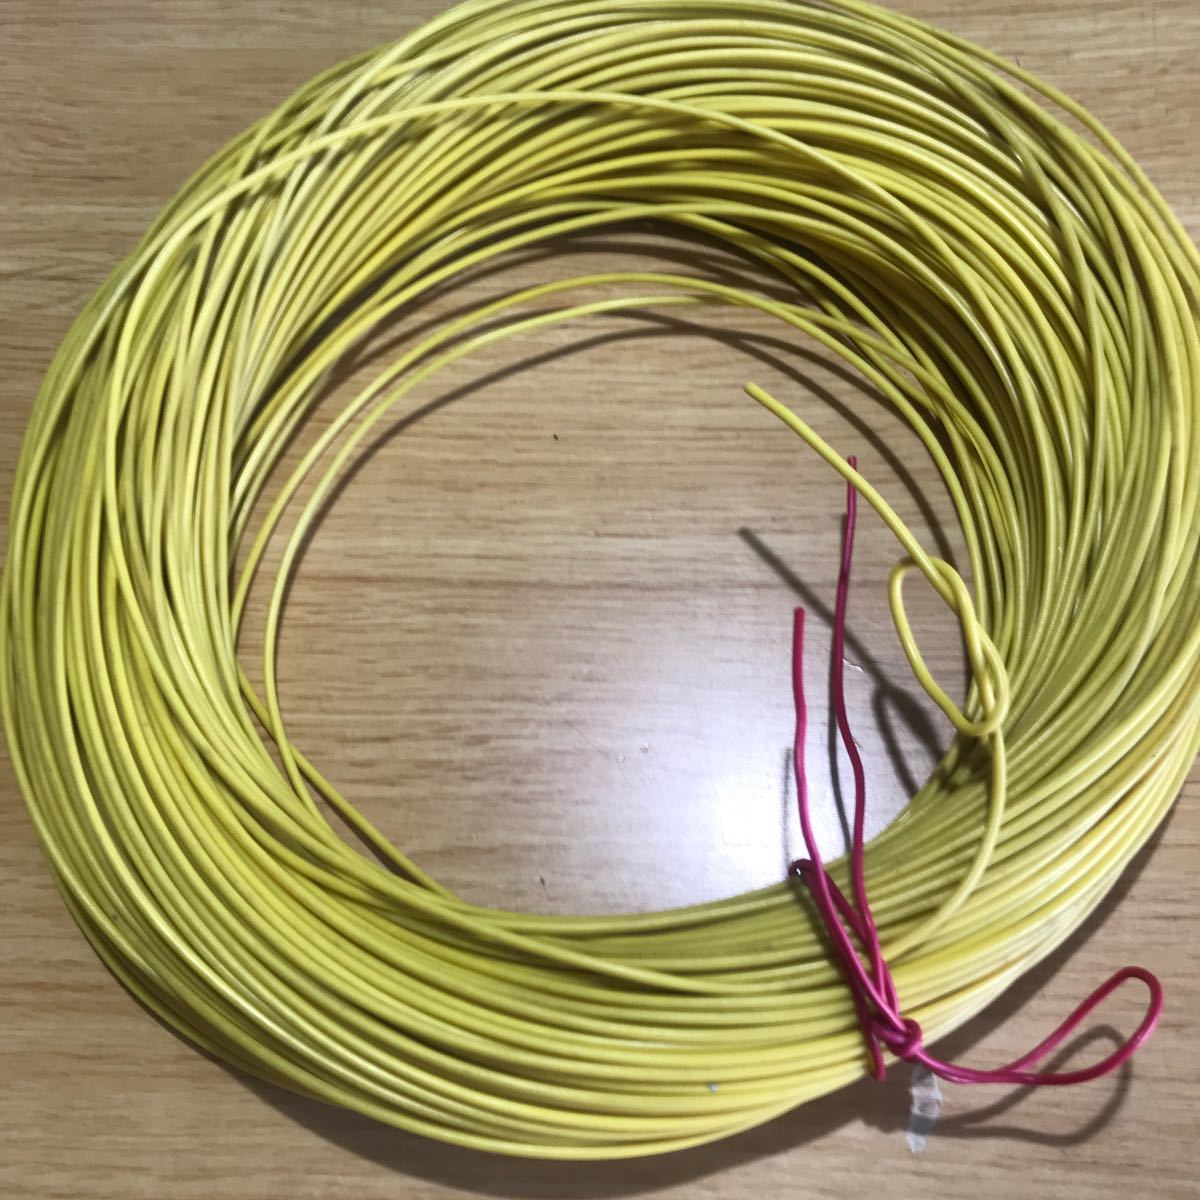 biniru электрический провод KV 0.5sq желтый примерно 100m 765g * используя остаток товар * товары долгосрочного хранения 